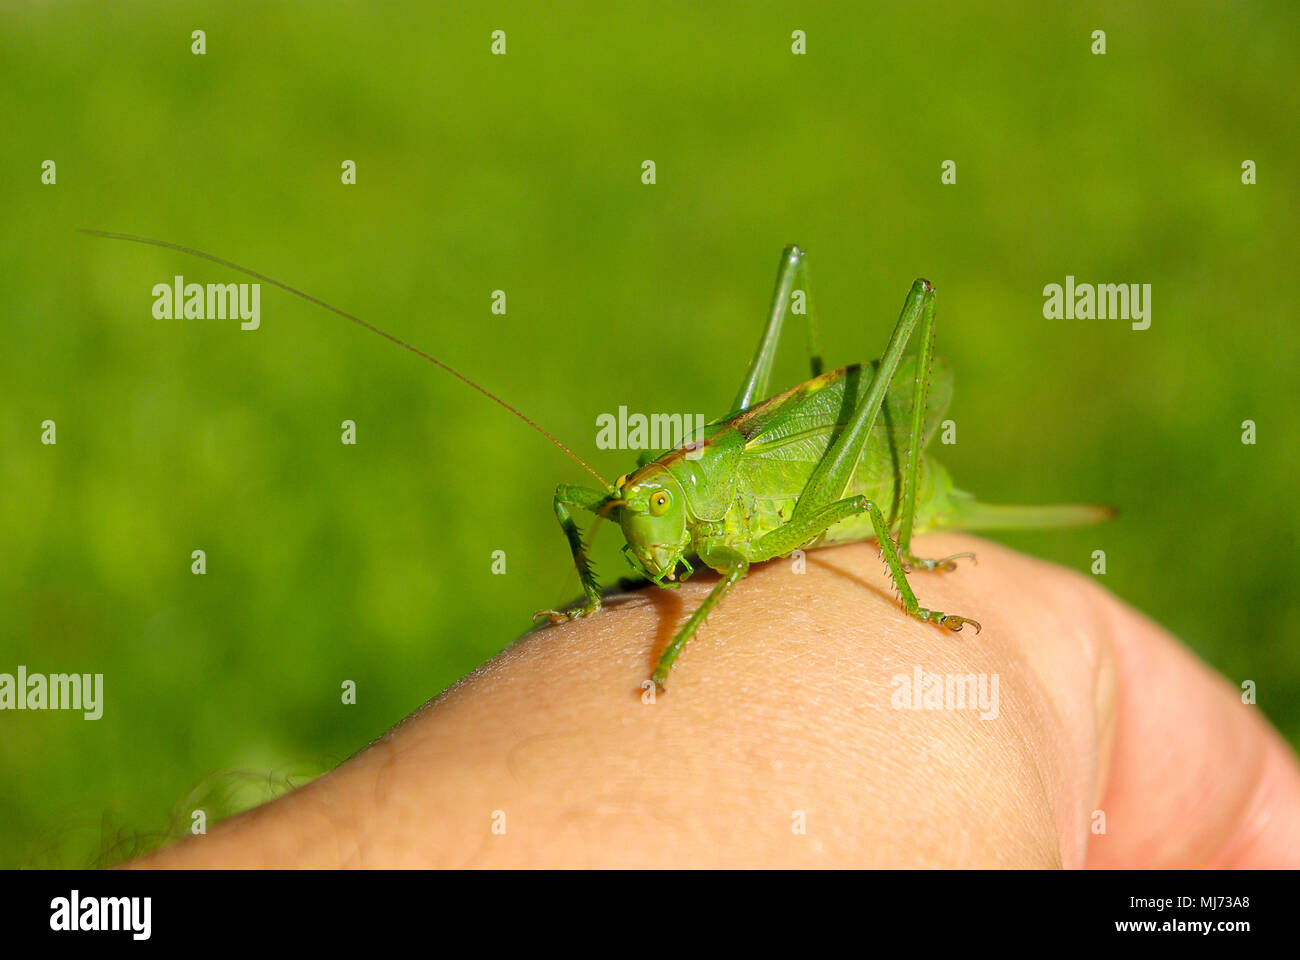 Frau Busch cricket Arten (Tettigonia) auf eine menschliche Hand. Stockfoto